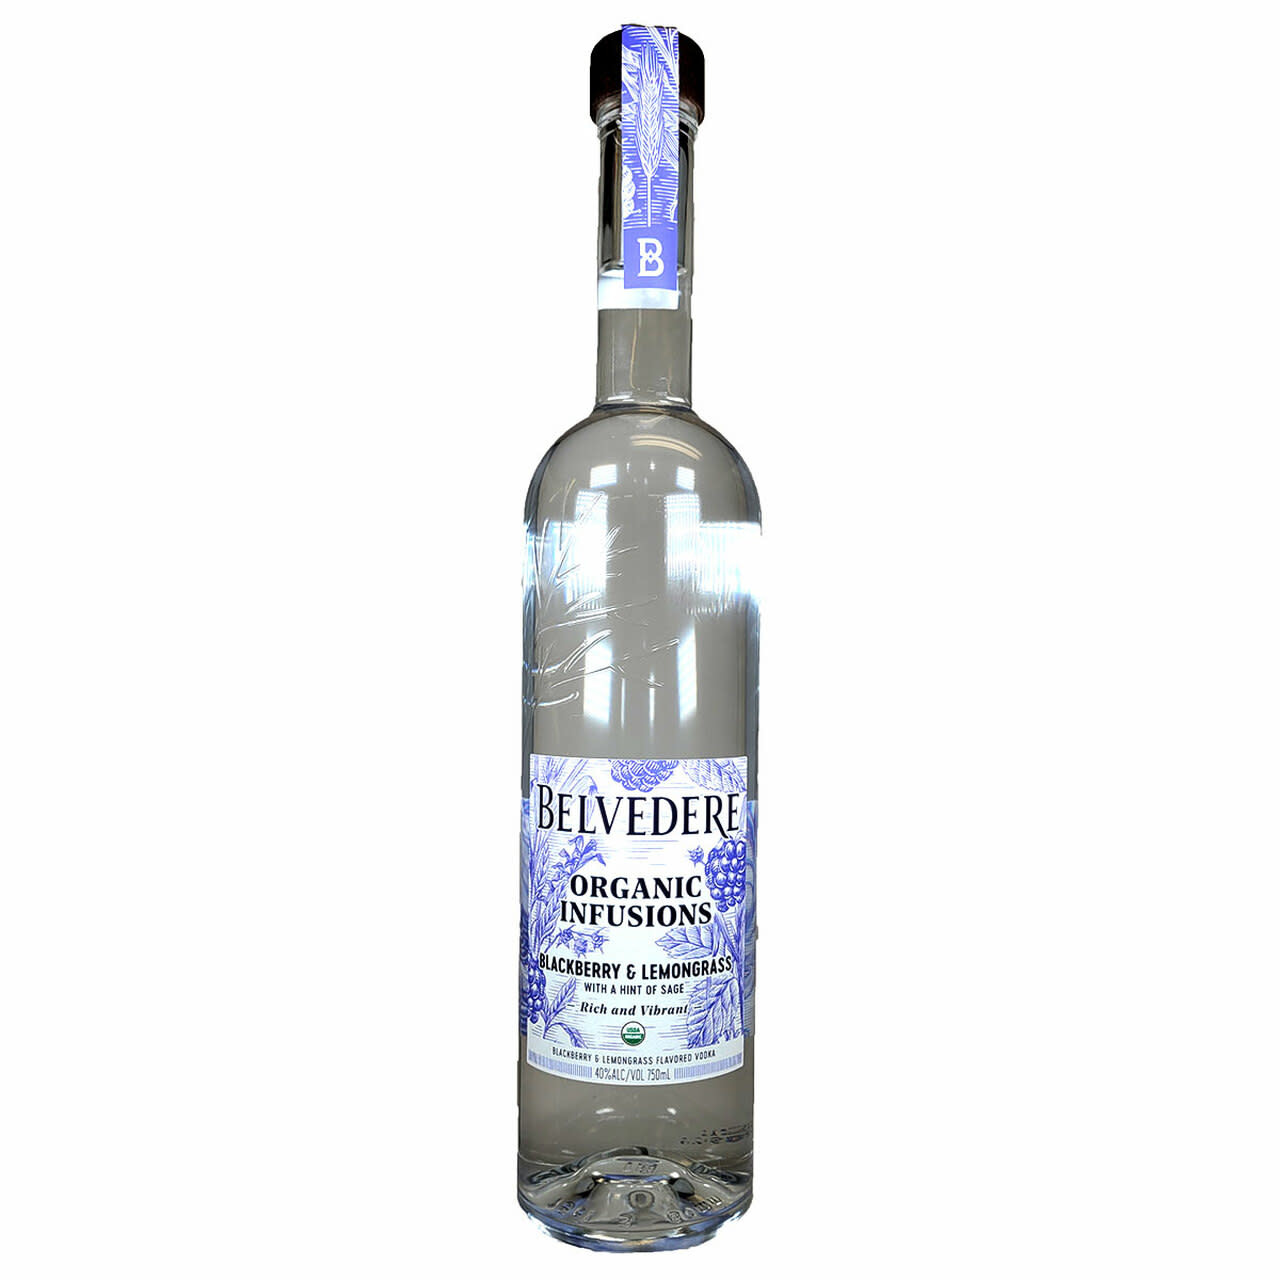 Belvedere - Organic Infusion Blackberry & Lemongrass French Vodka (750ml)